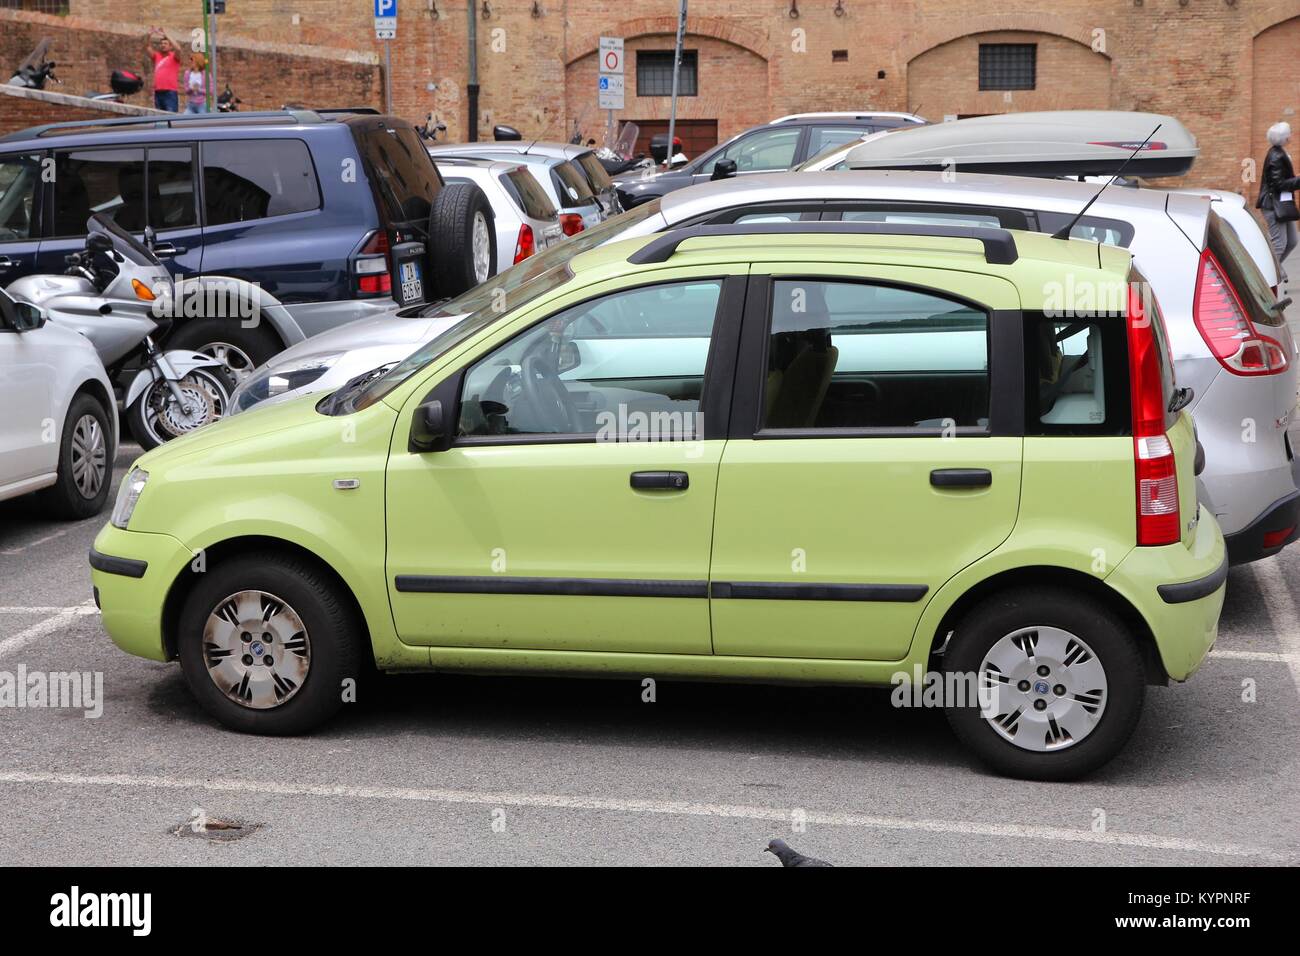 SIENA, Italia - 3 Maggio 2015: Fiat Panda auto parcheggiate in Siena, Italia. La seconda generazione di Panda è stata prodotta nel 2003-2012. Più di 2,1 milioni di unità wer Foto Stock